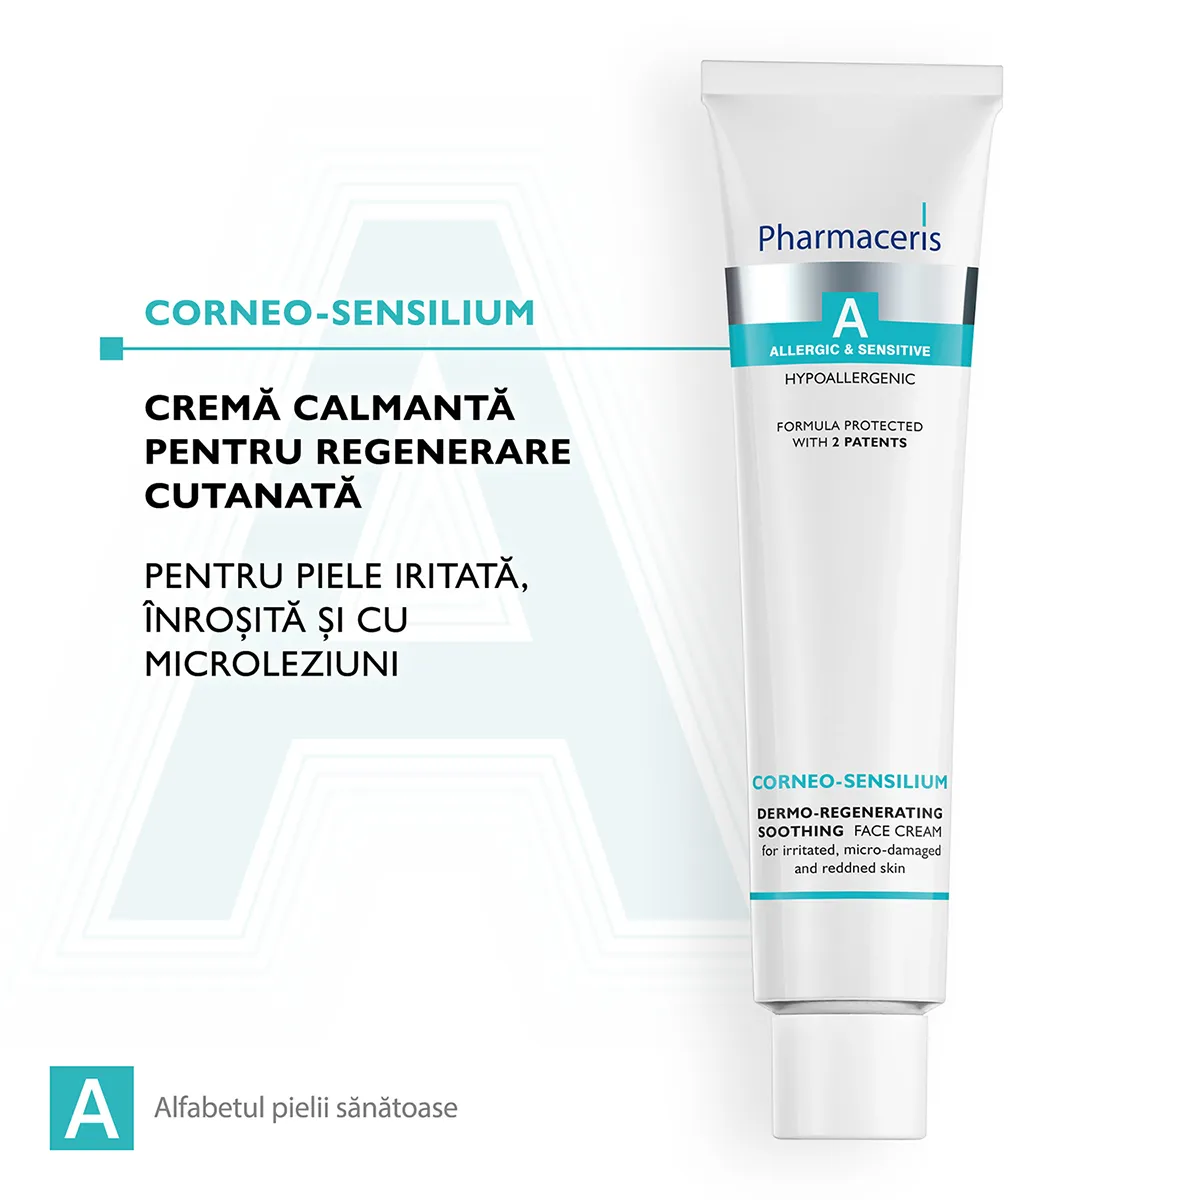 Crema calmanta regeneratoare Corneo-Sensilium A, 75ml, Pharmaceris 